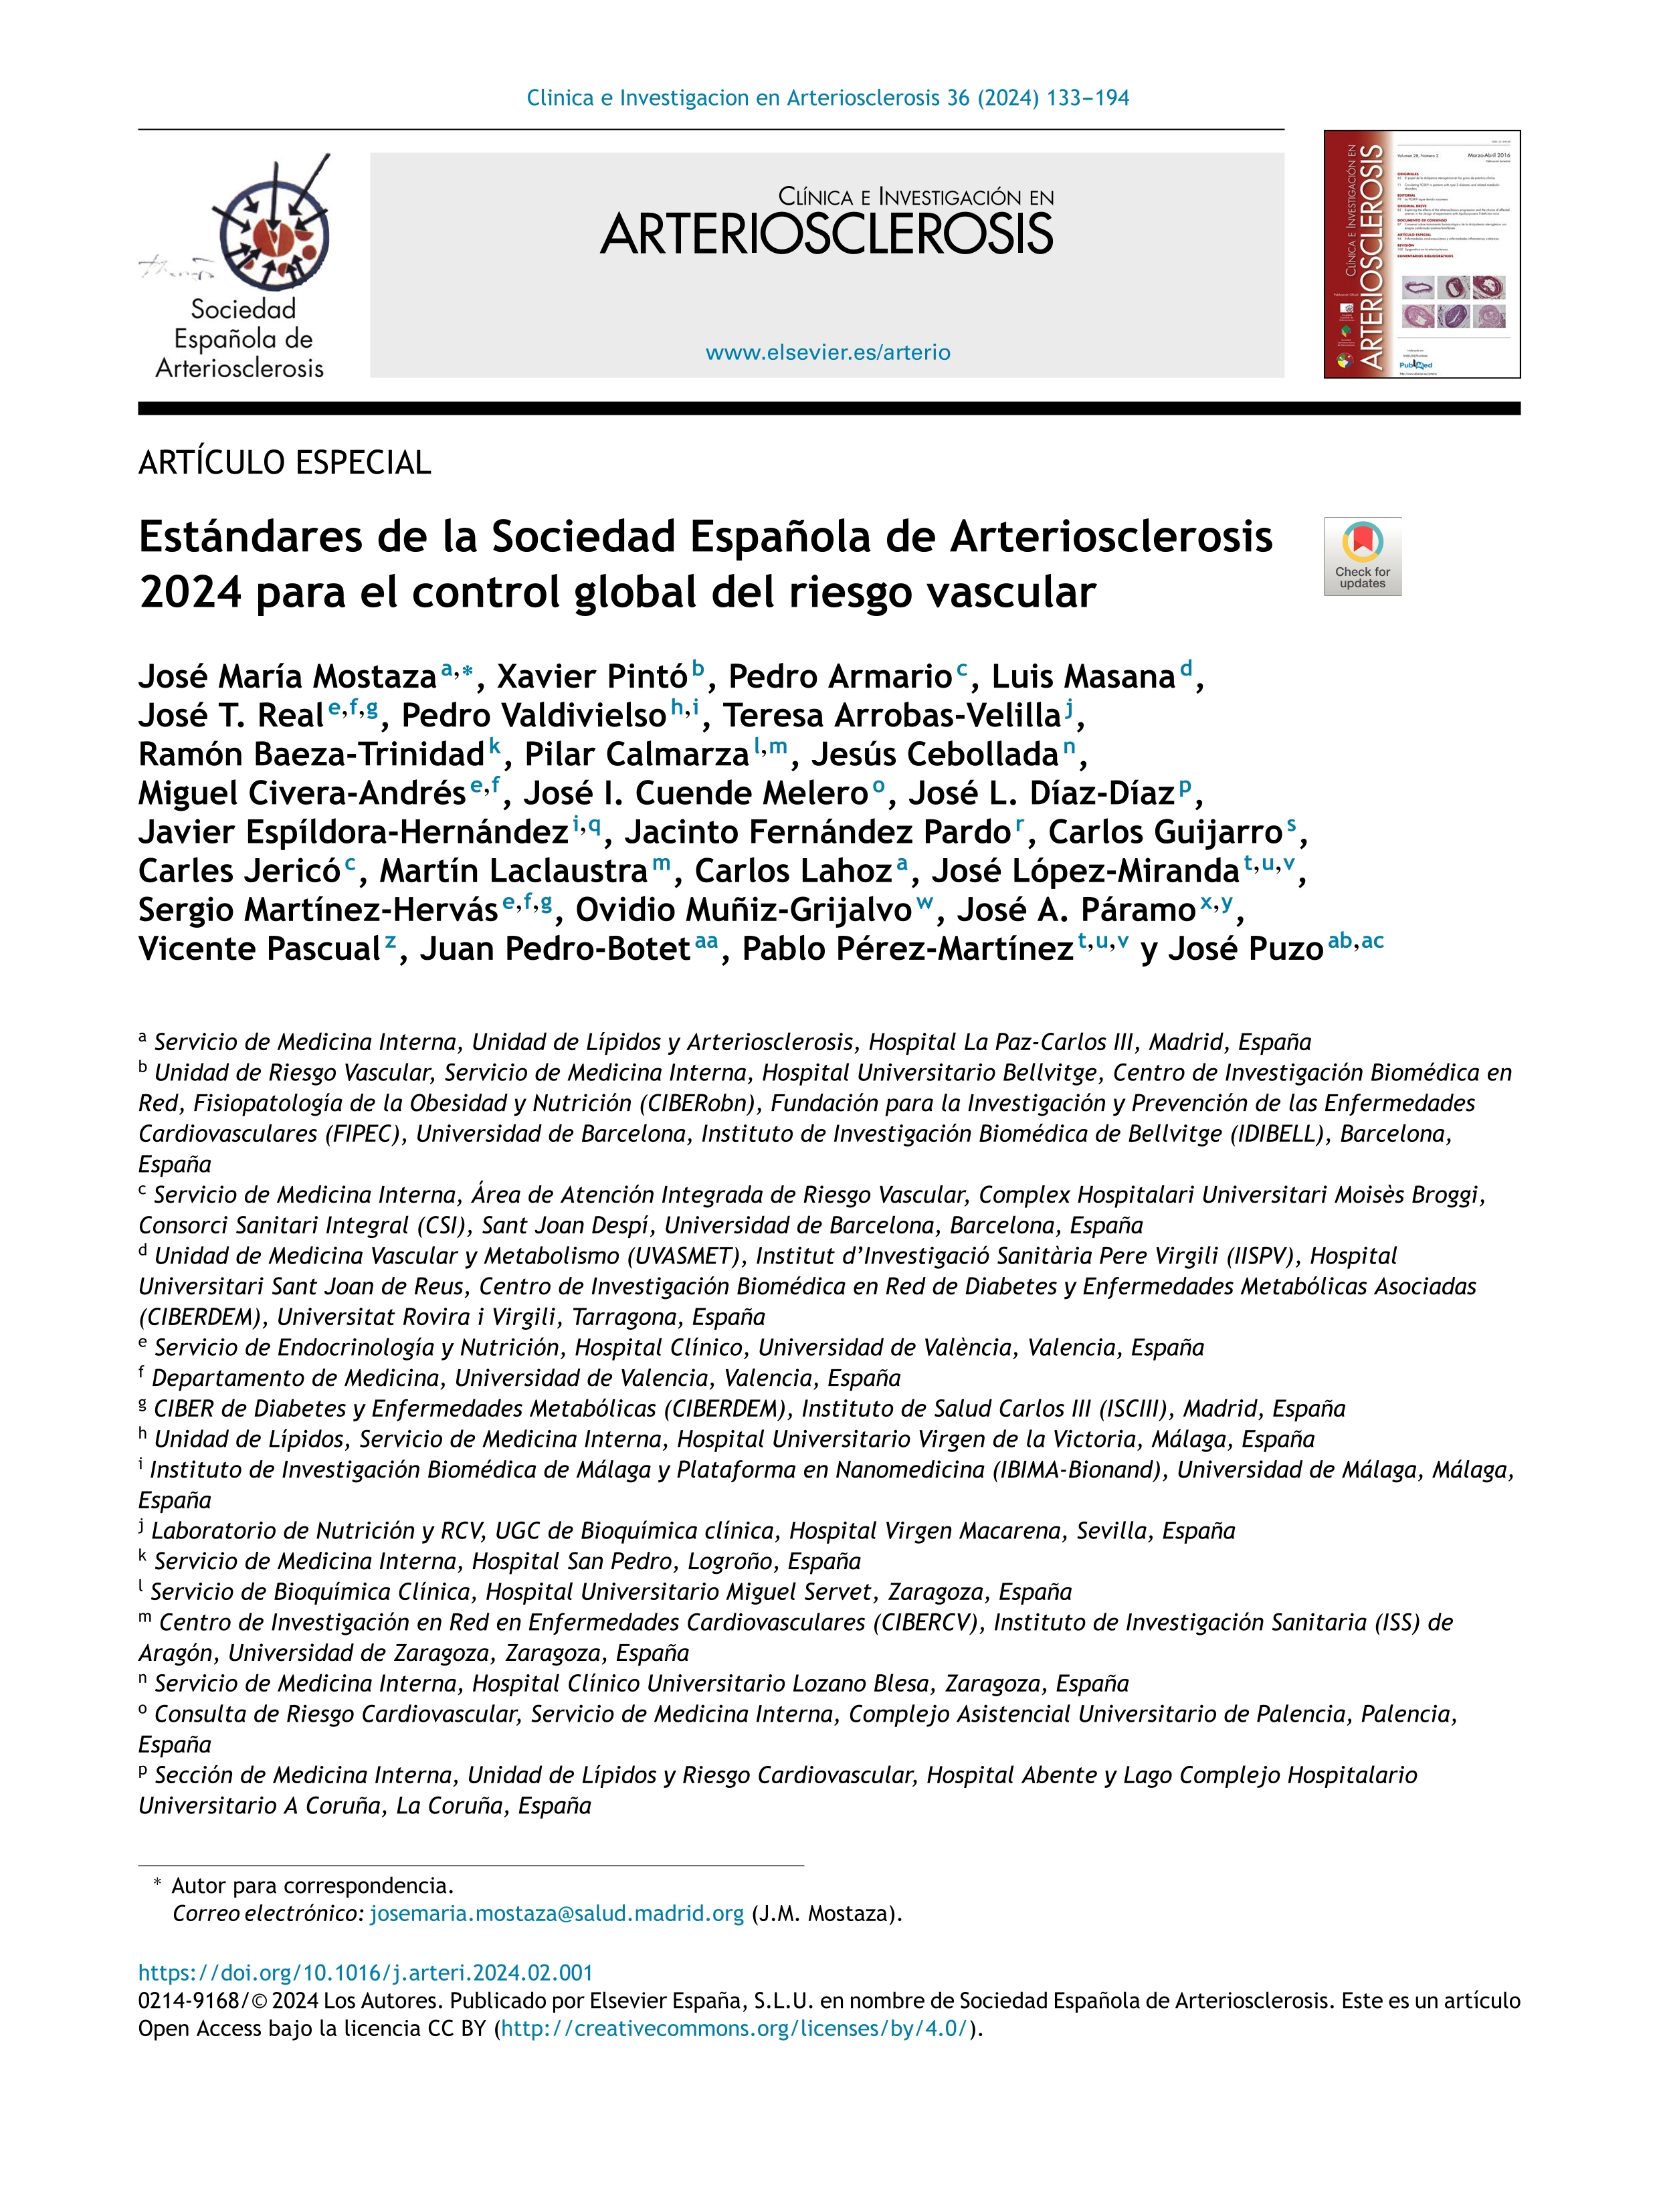 Estándares de la Sociedad Española de Arteriosclerosis 2024 para el control global del riesgo vascular